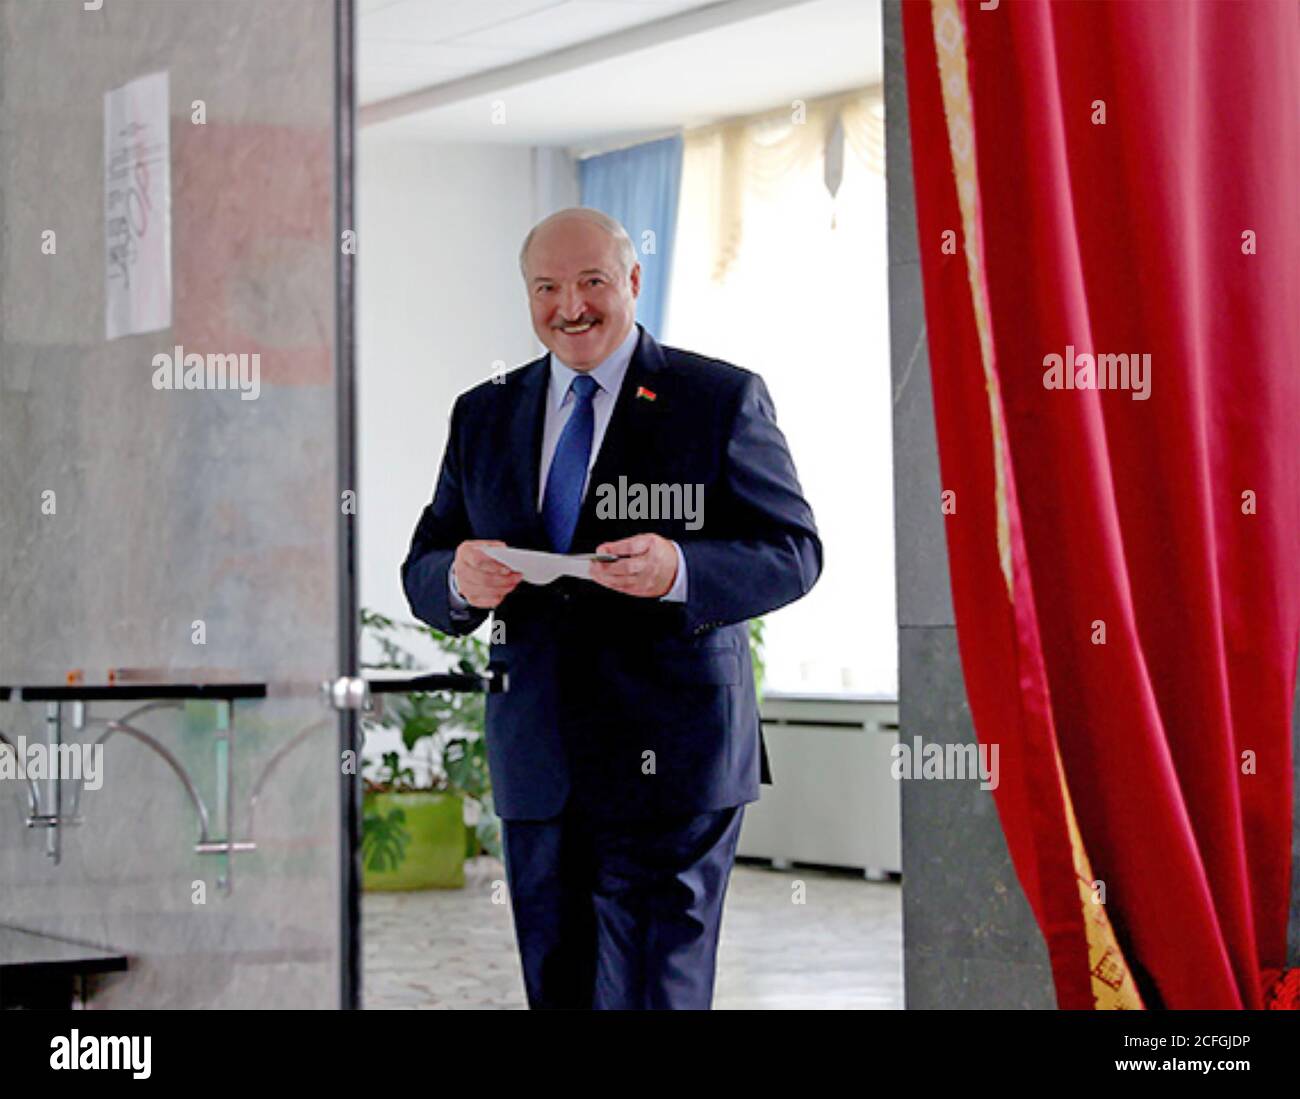 ALEXANDER LUKASHENKO en tant que président de la Biélorussie dans un bureau de vote pour les élections présidentielles de 2020. Photo: Belarus BV. Banque D'Images